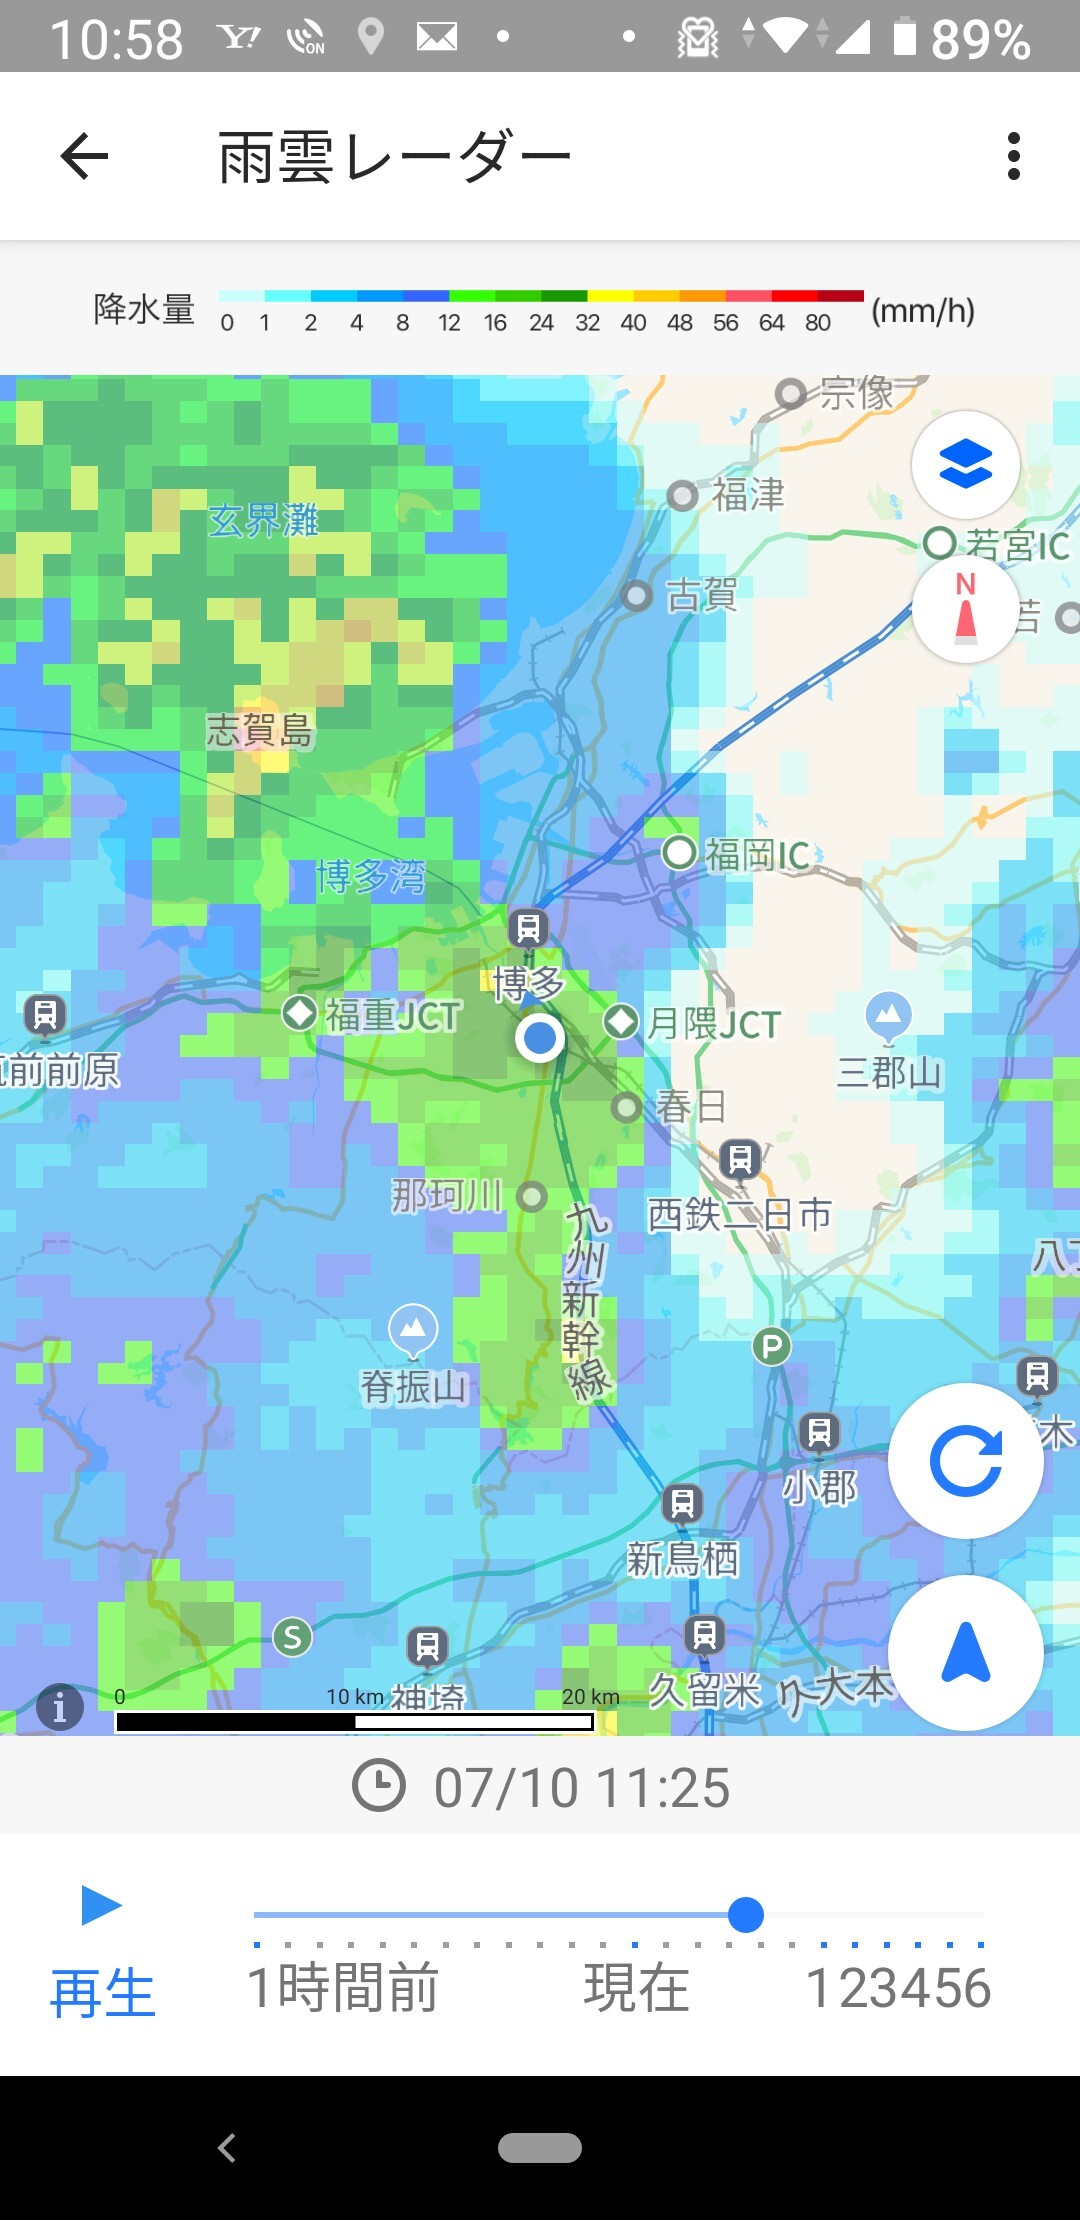 レーダー 市 雨雲 福岡 福岡県福岡市博多区の雨雲レーダーと各地の天気予報